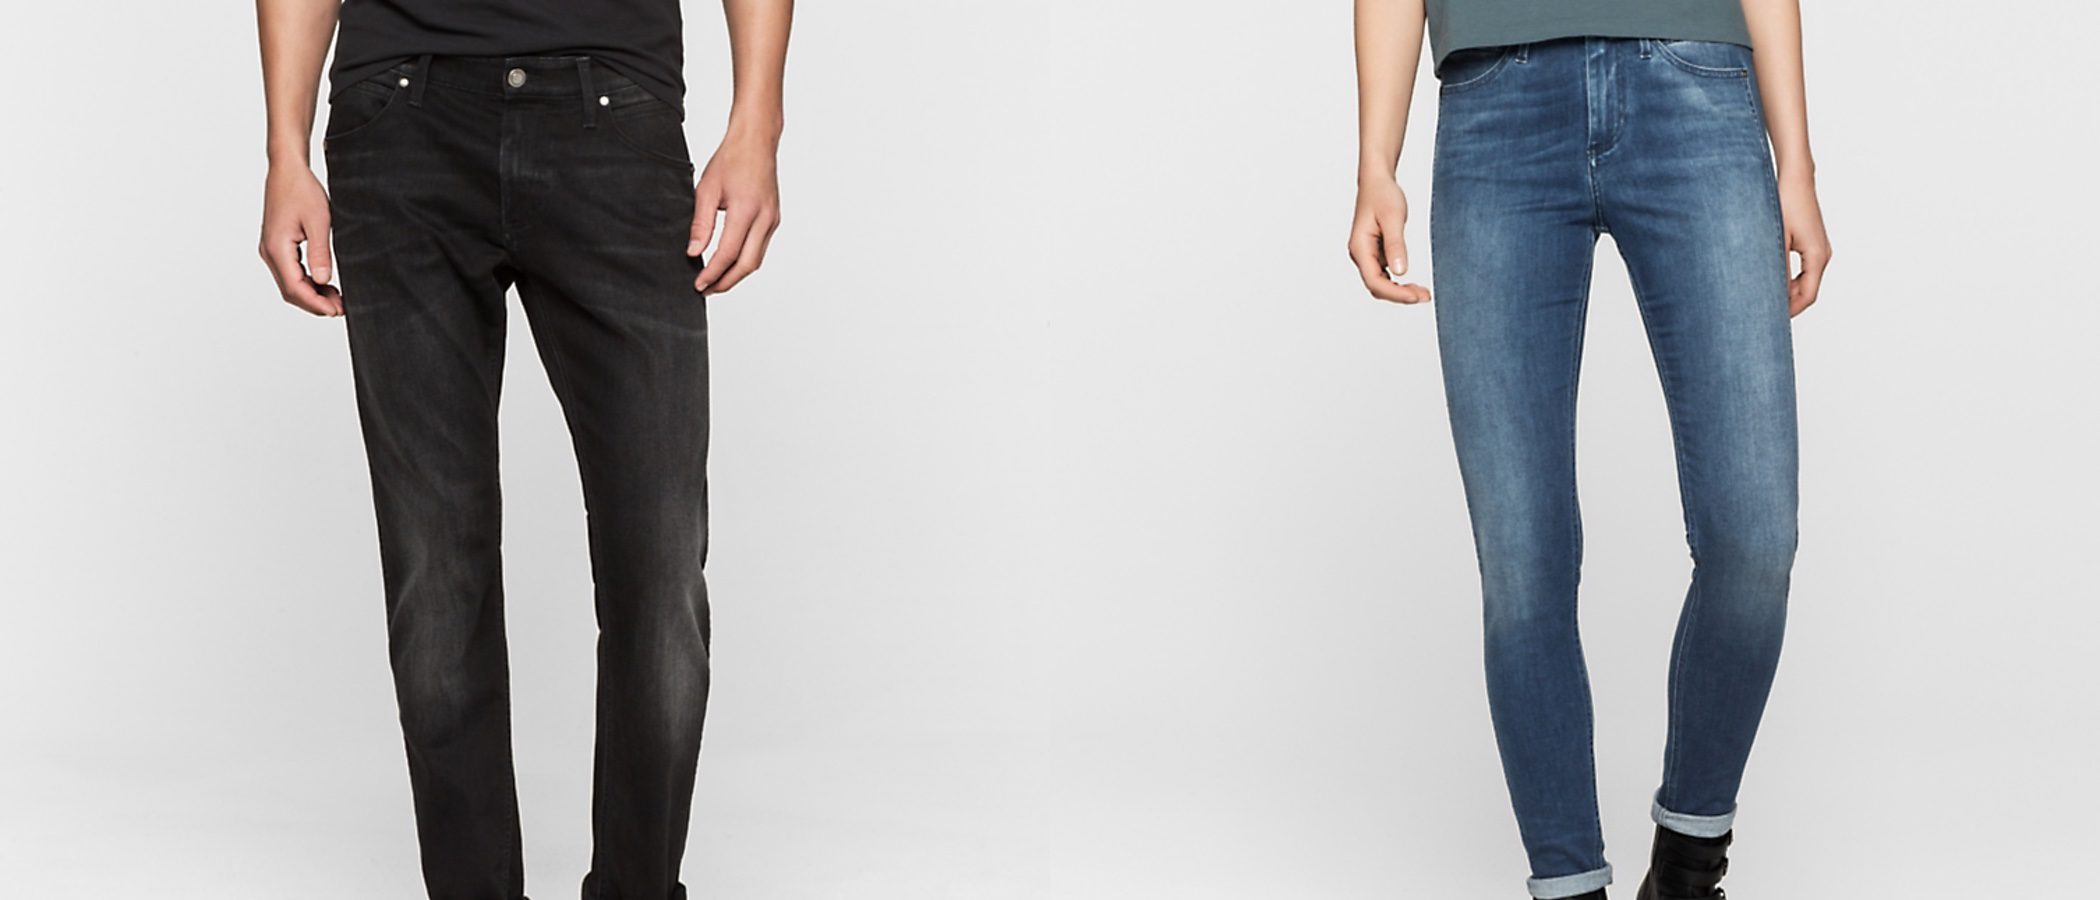 Calvin Klein lanza una nueva colección de jeans para otoño/invierno 2016/2017